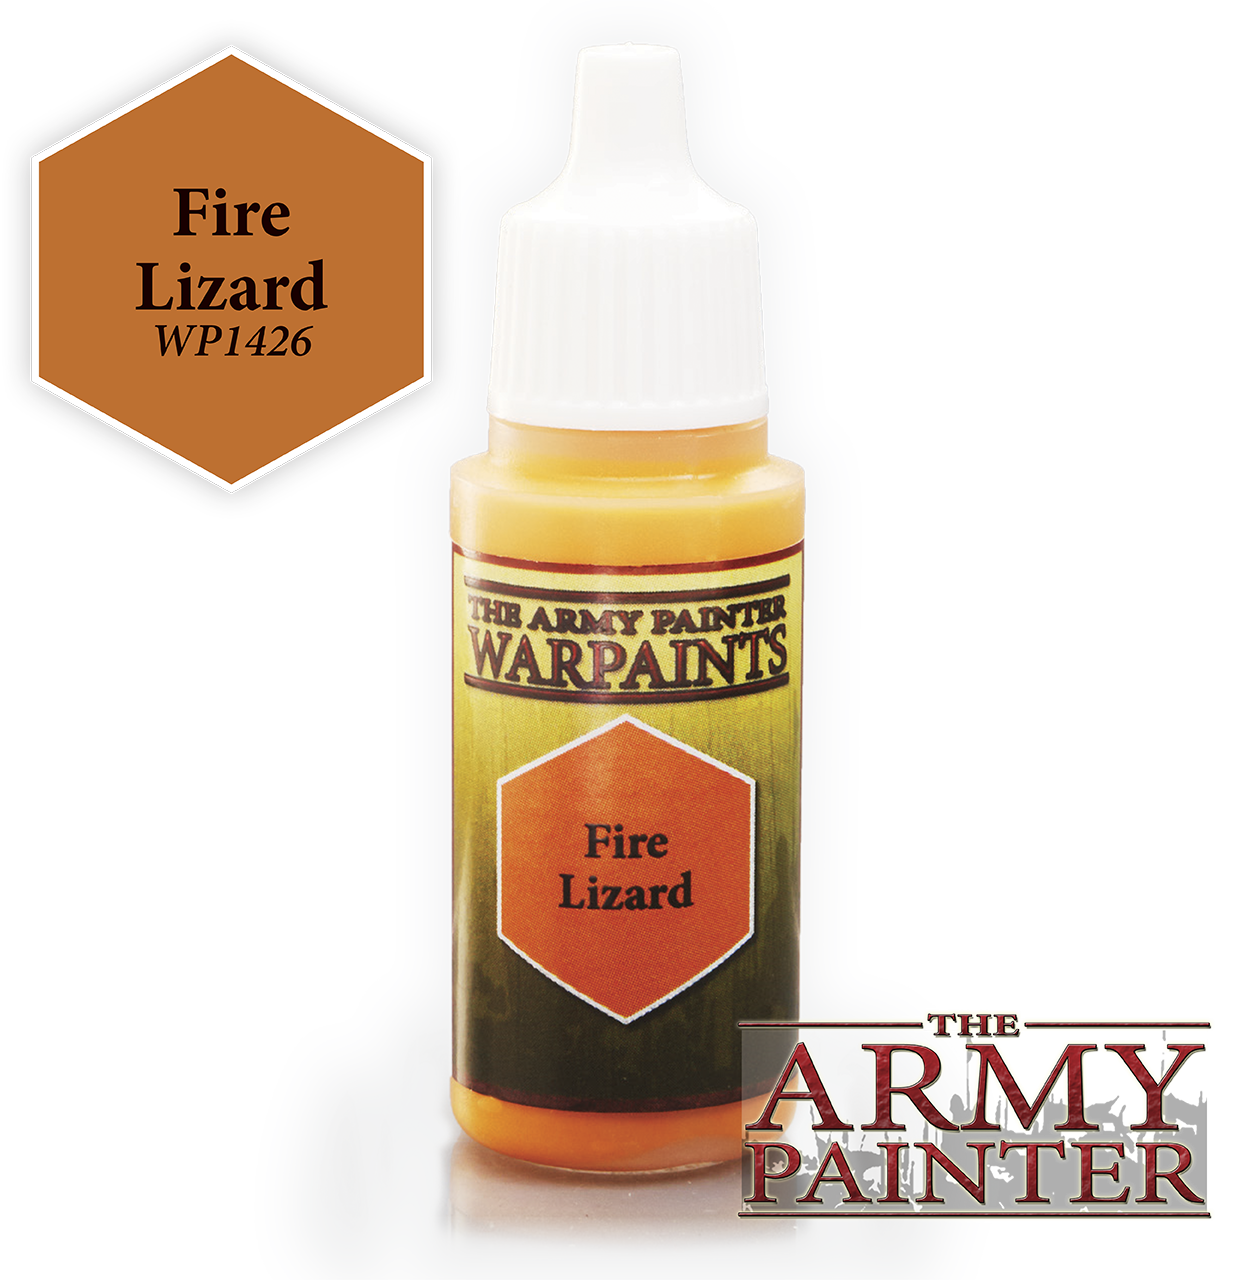 Fire Lizard - Army Painter Warpaints